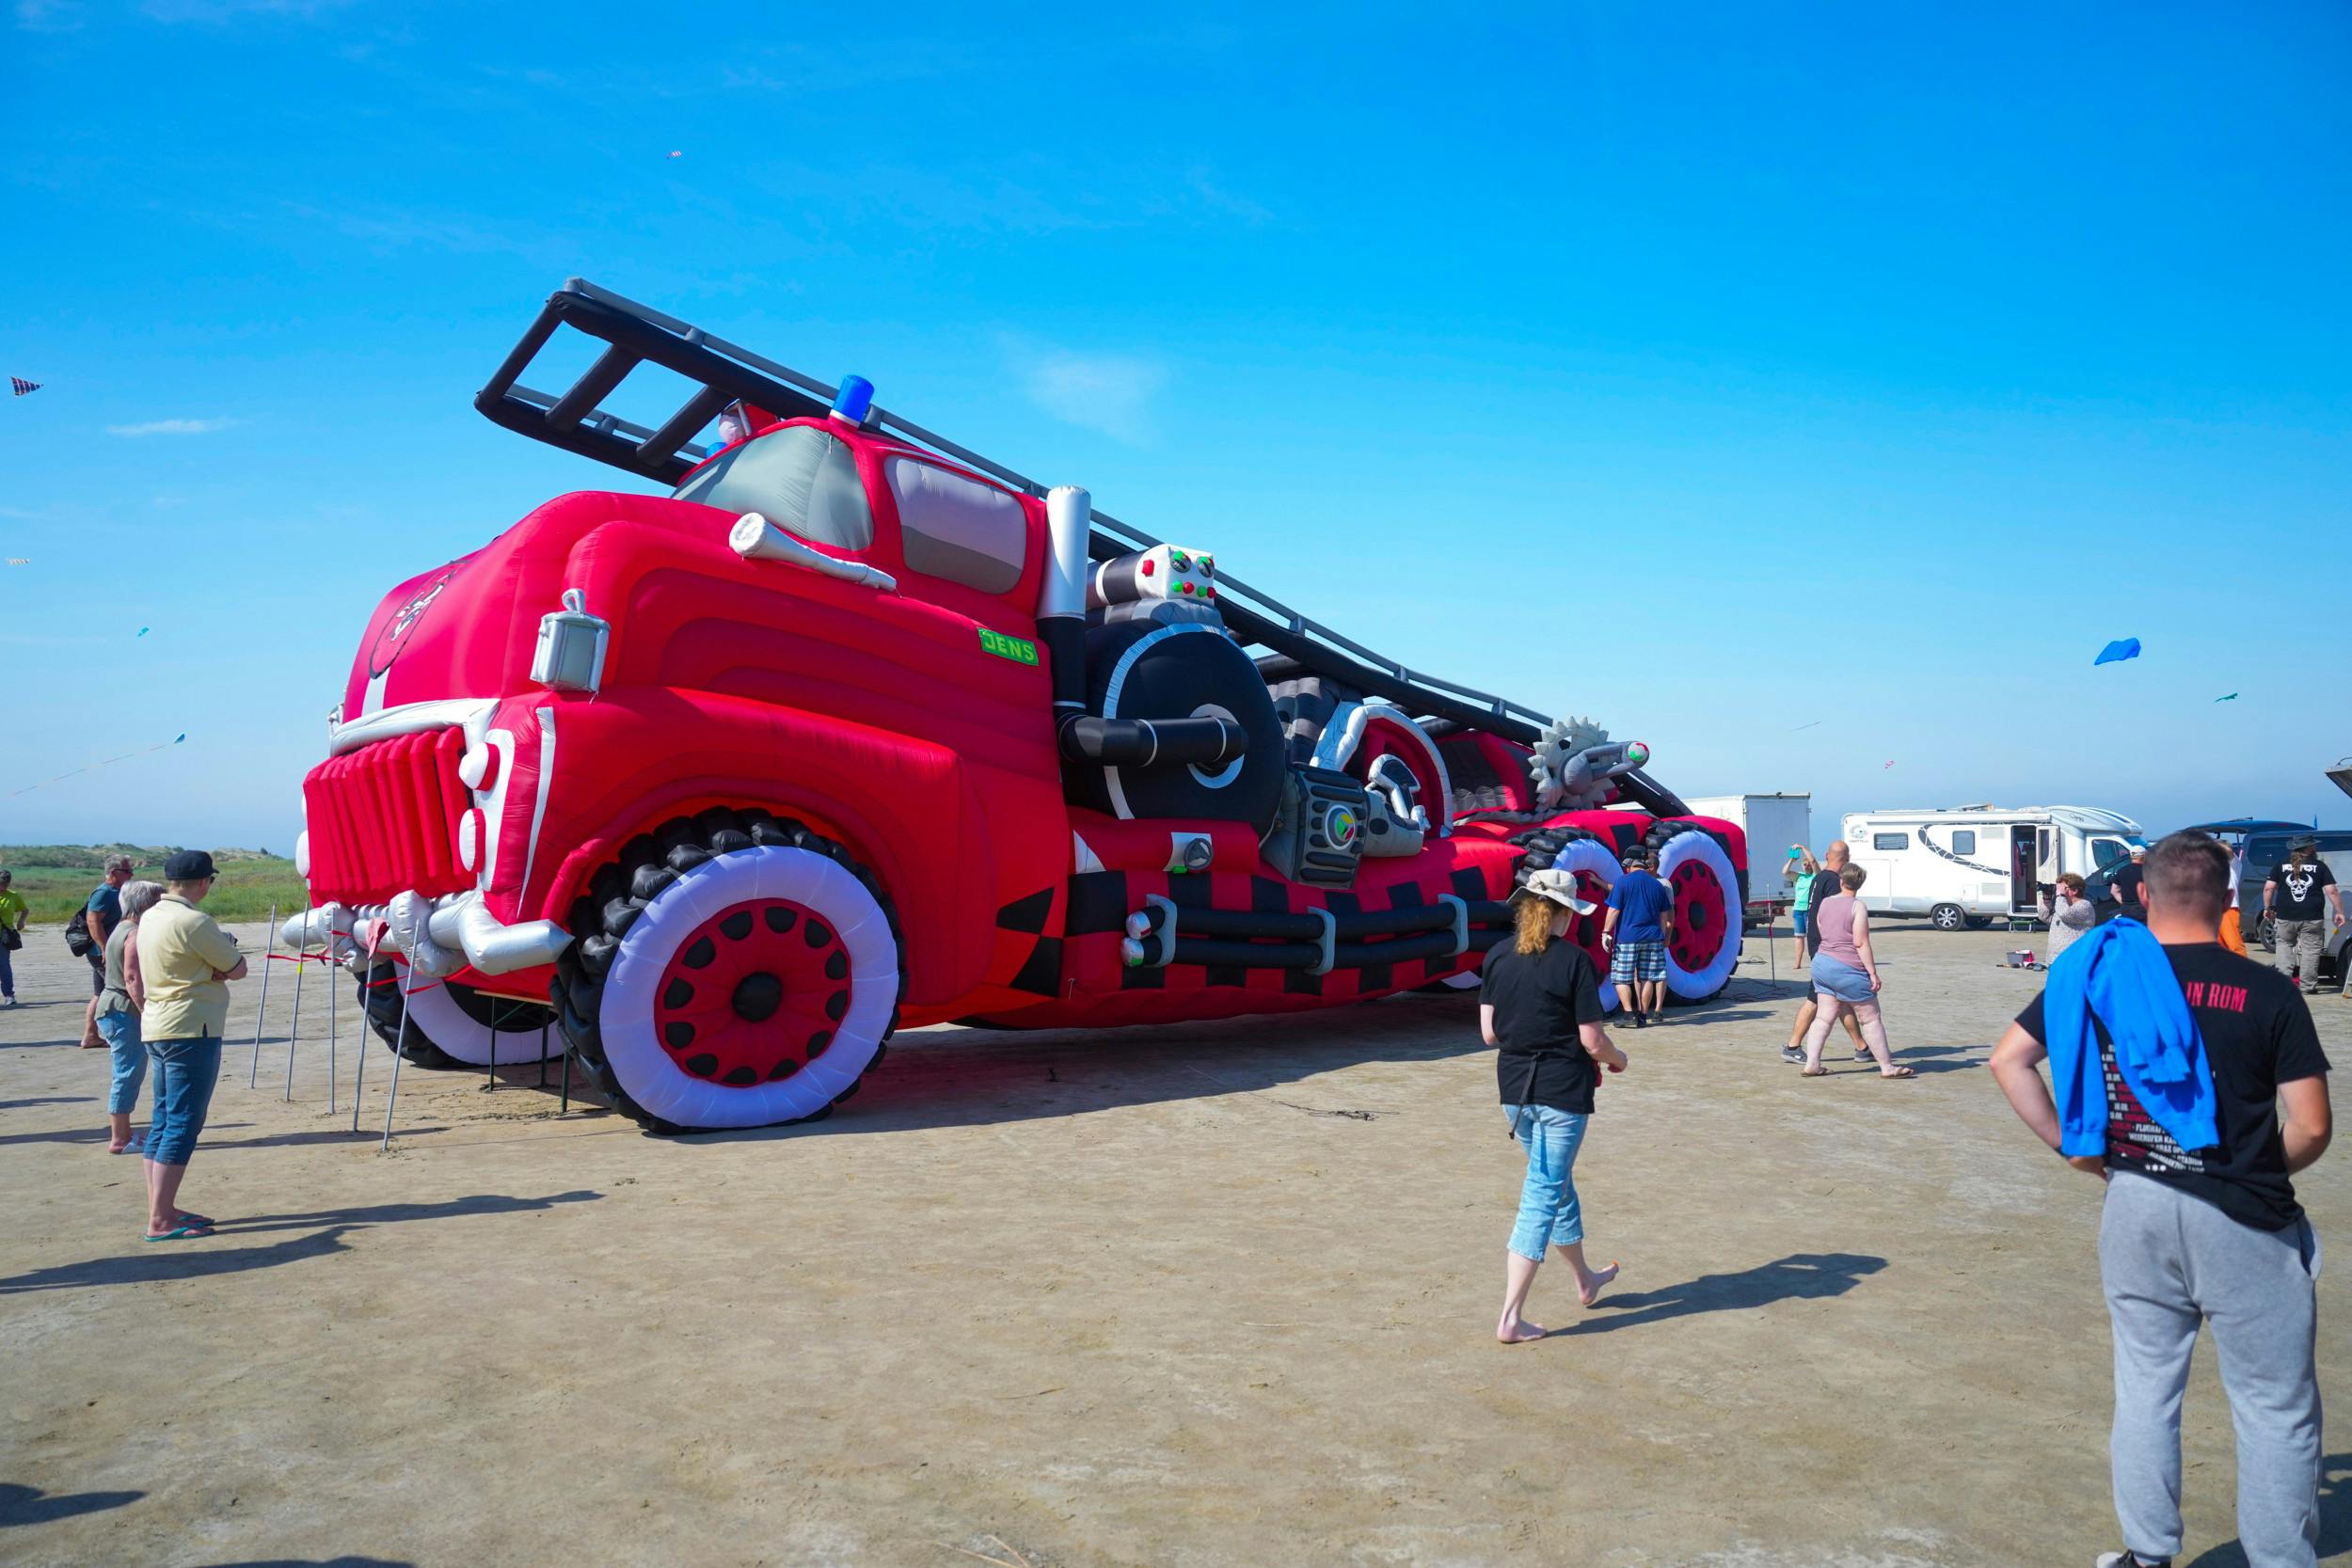 En drage i form af en brandbil til Fanø Dragefestival